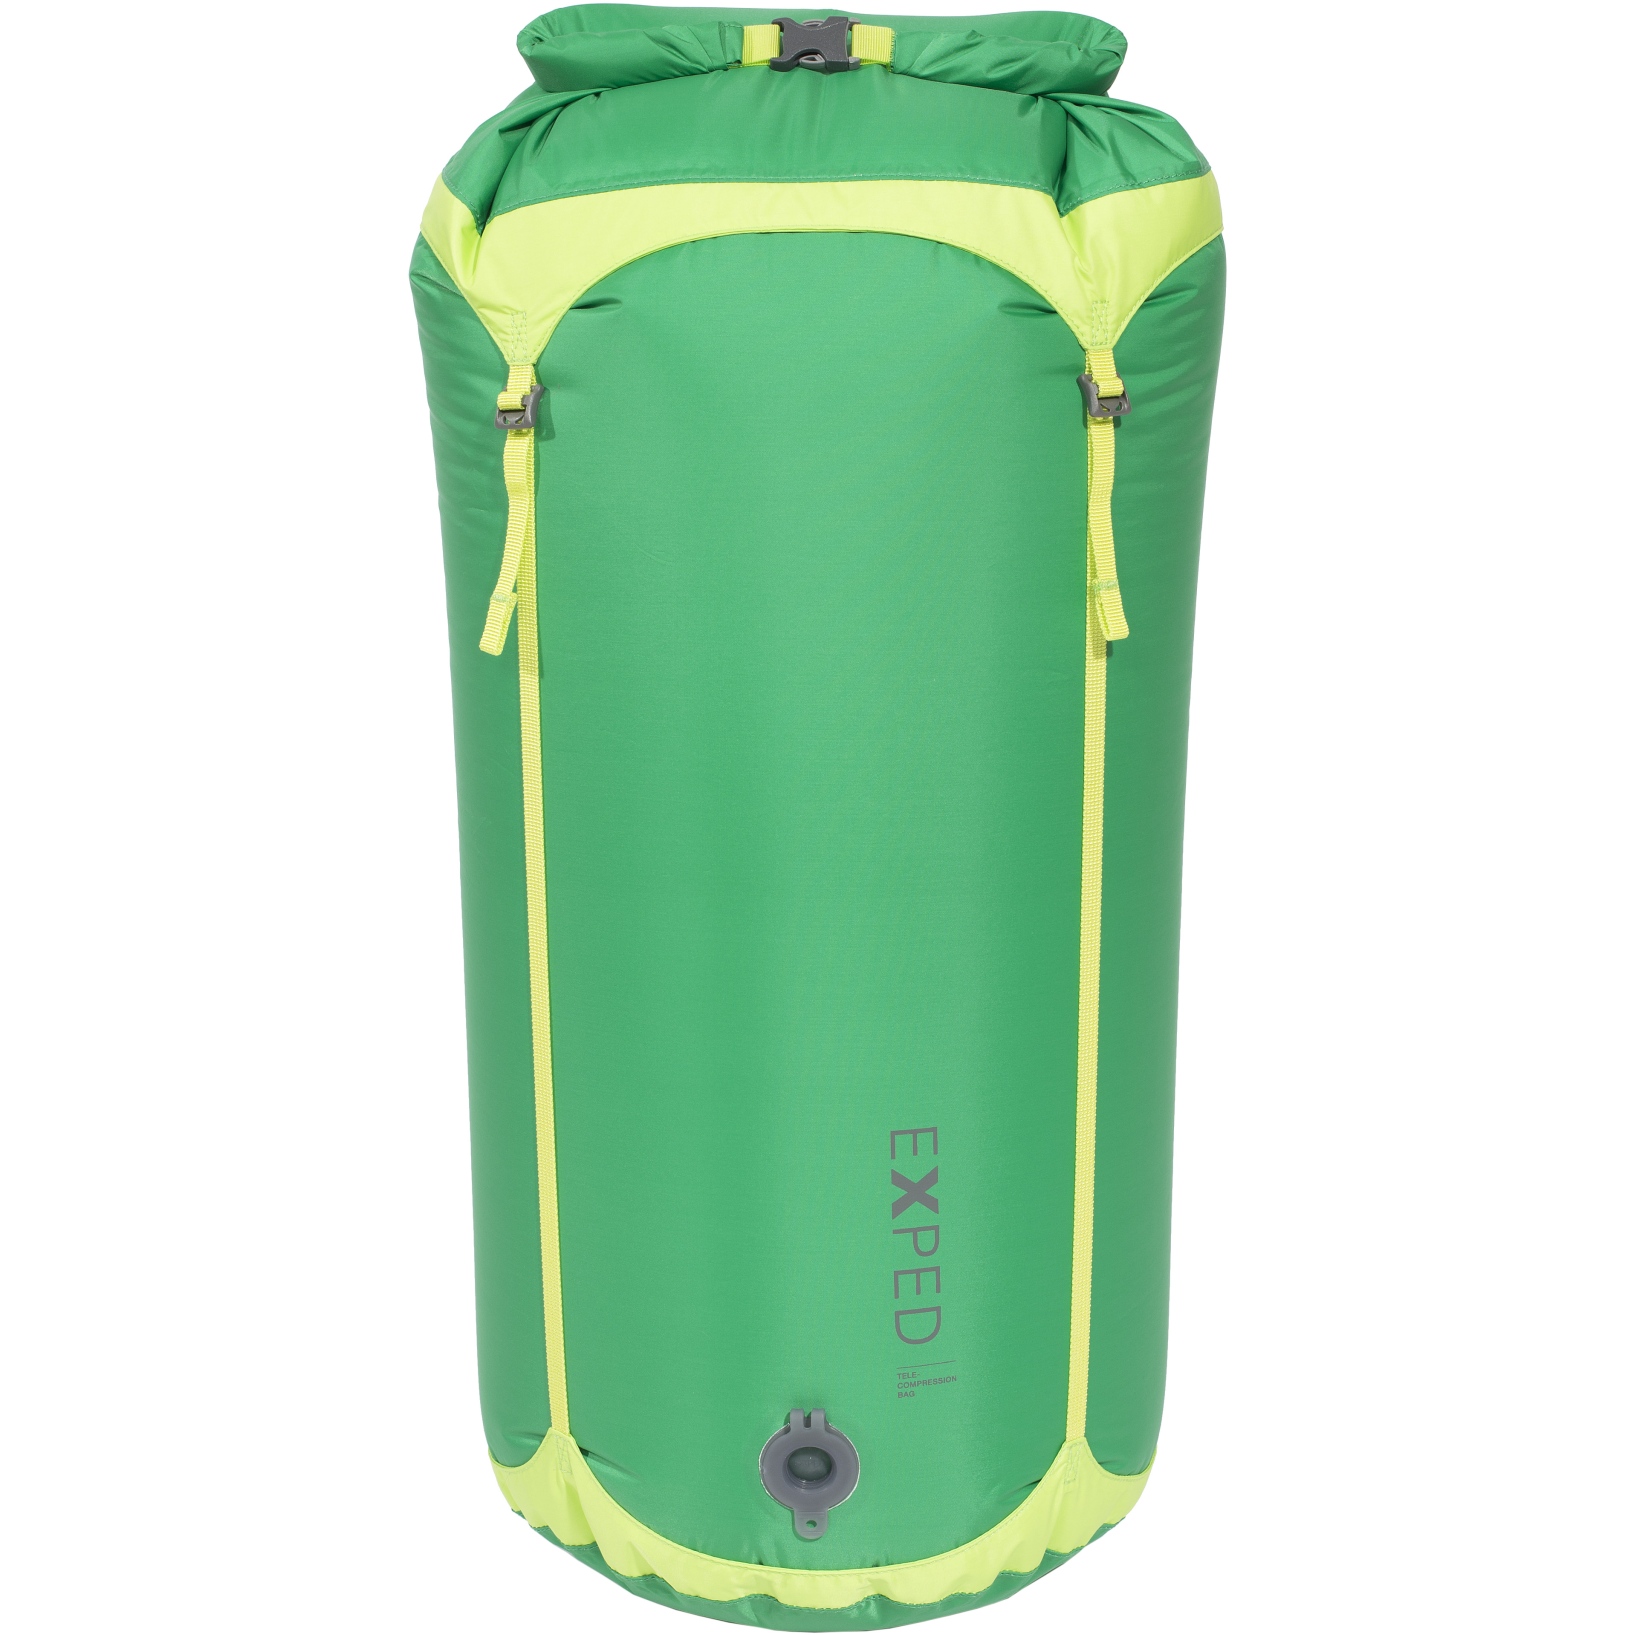 Produktbild von Exped Waterproof Telecompression Bag - Packsack - L - grün